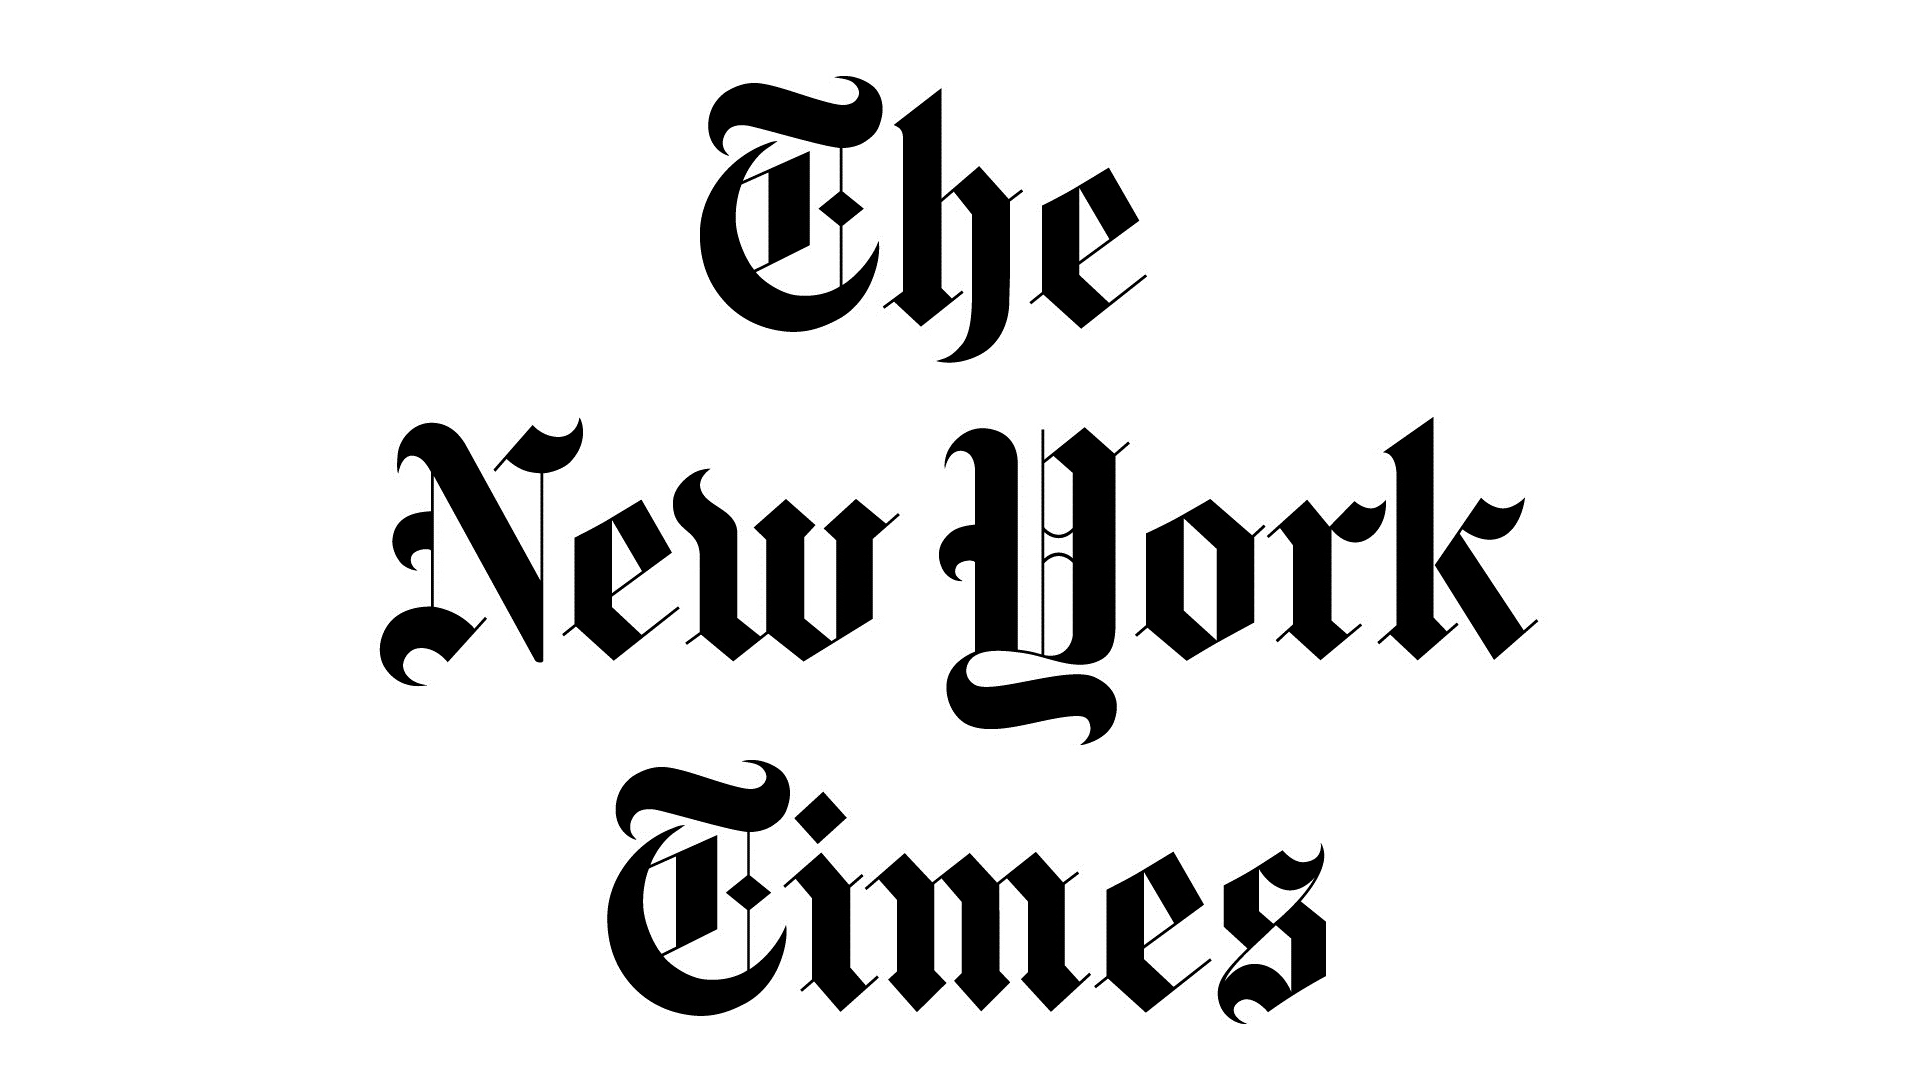 Нью йорк таймс